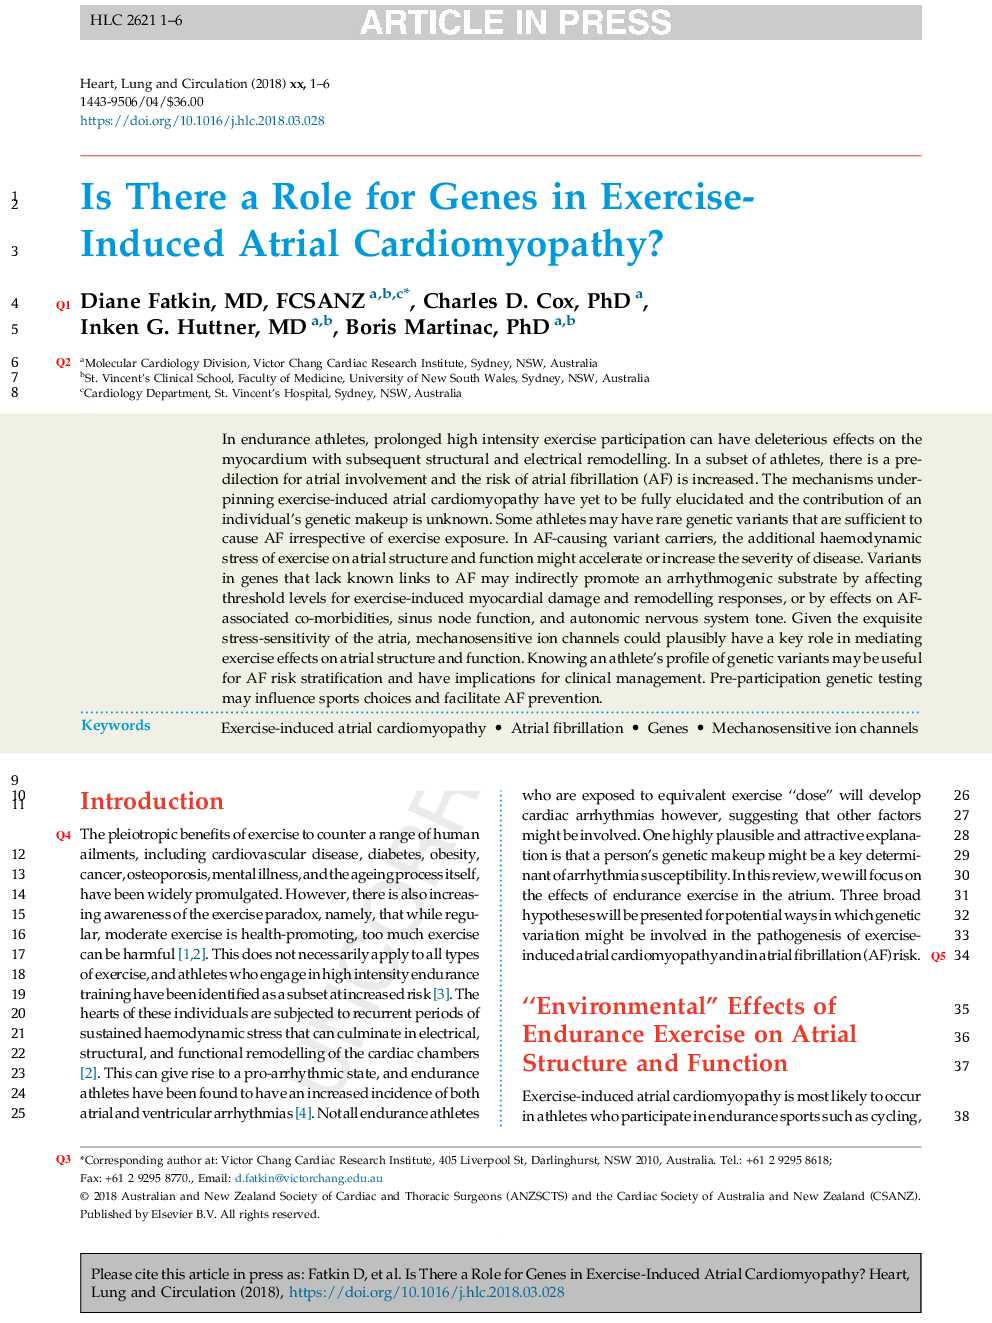 آیا نقش ژنی در کاردیومیوپاتی دهلیزی ناشی از ورزش وجود دارد؟ 